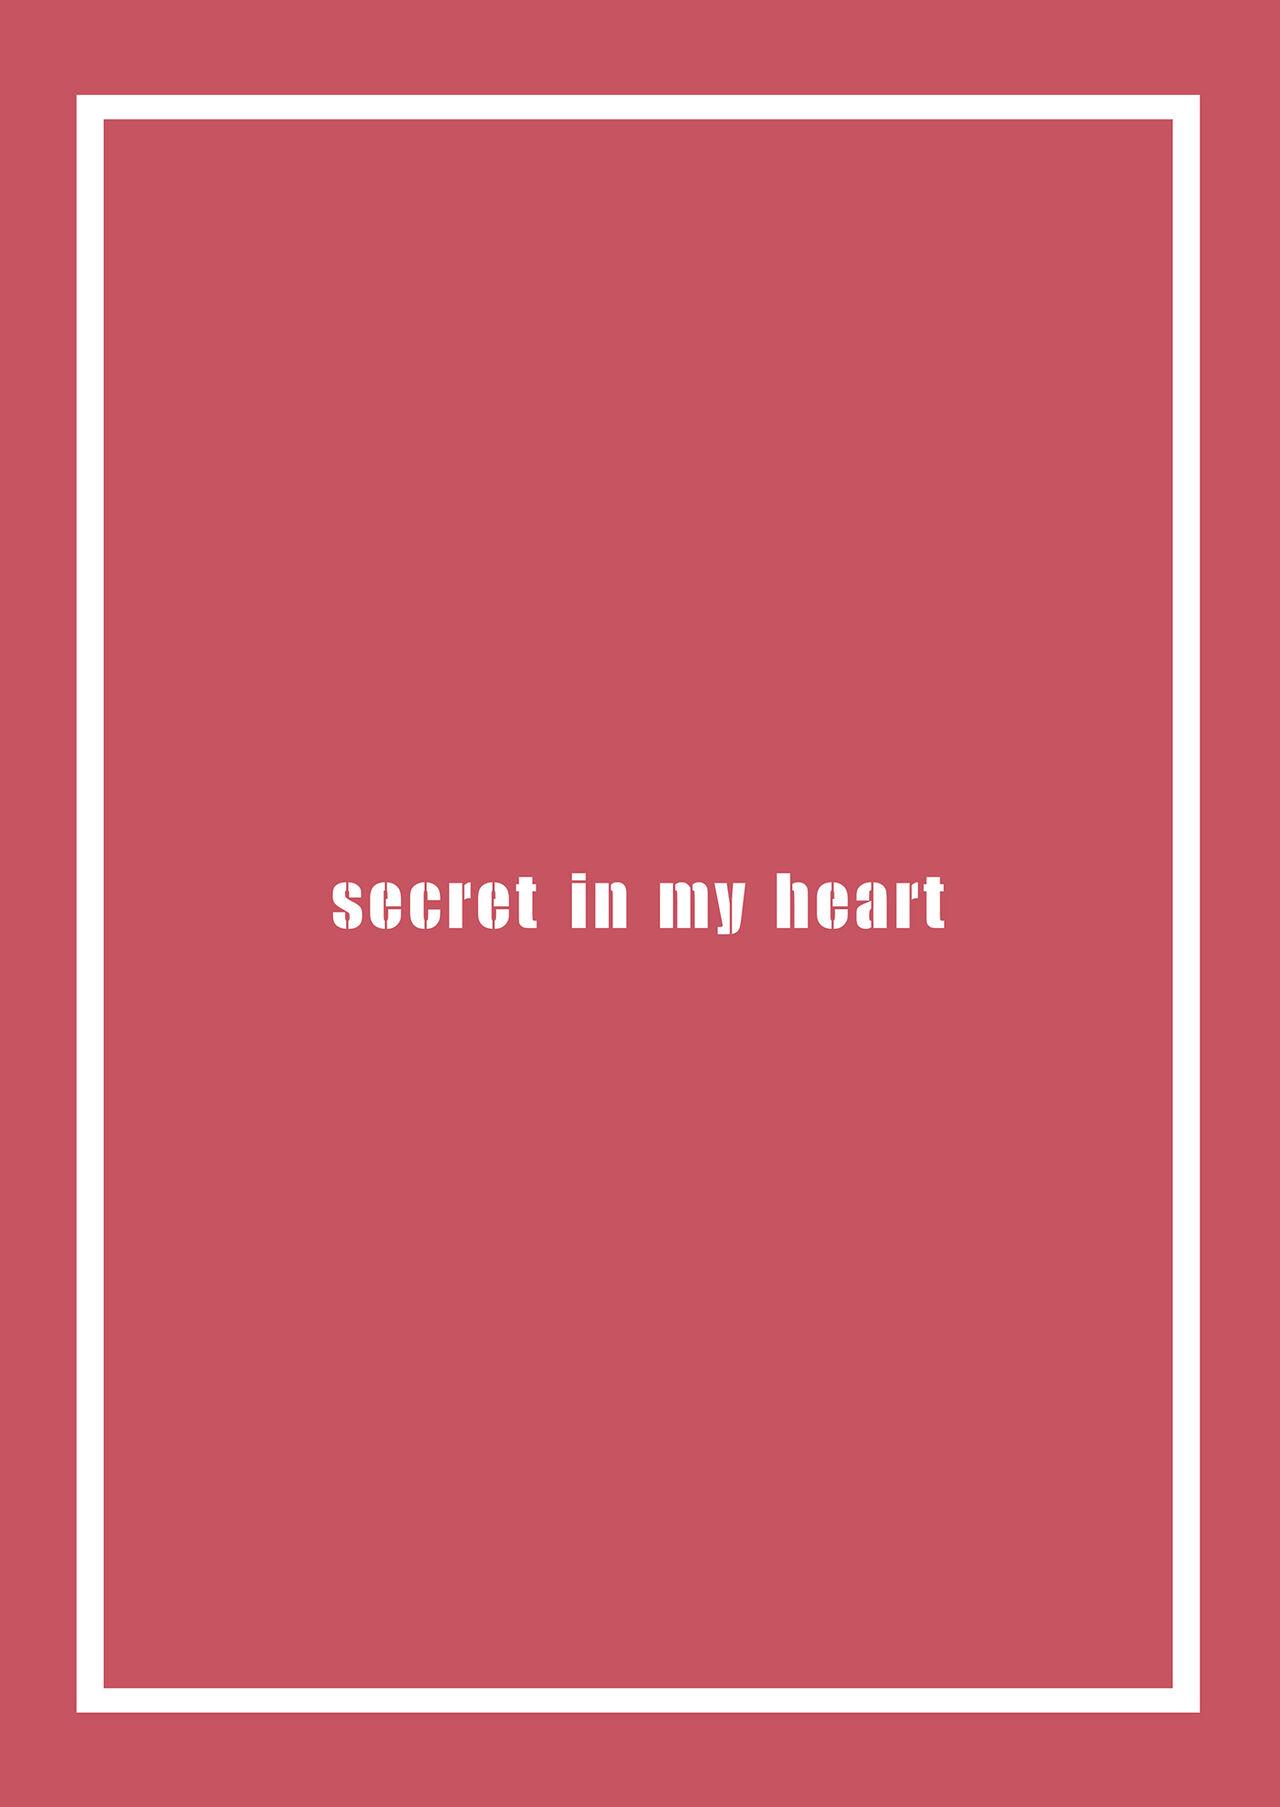 secret in my heart 22